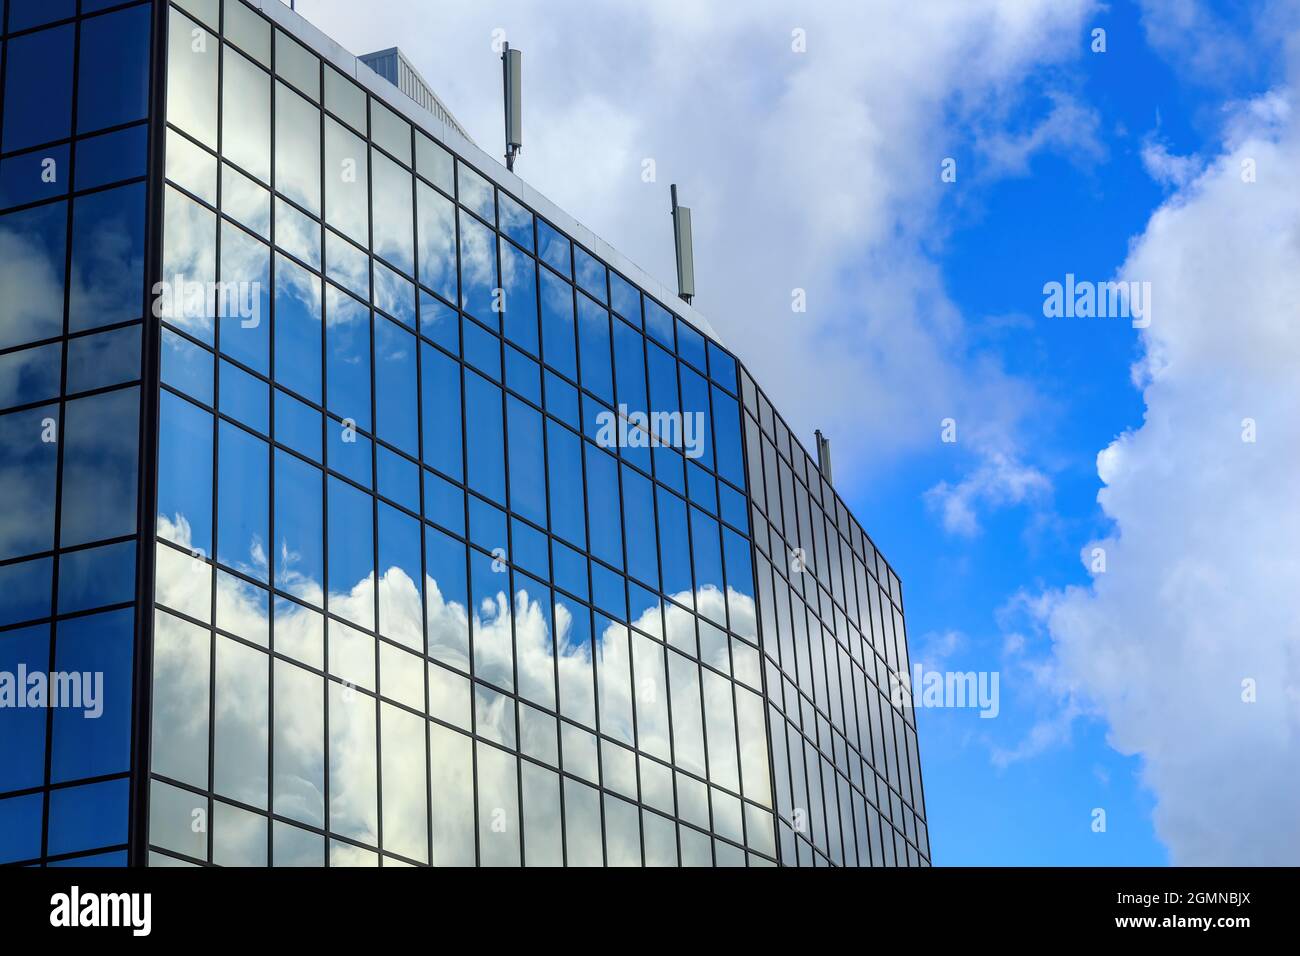 Ciel bleu et nuages moelleux reflétés dans les fenêtres d'un bâtiment en miroir Banque D'Images